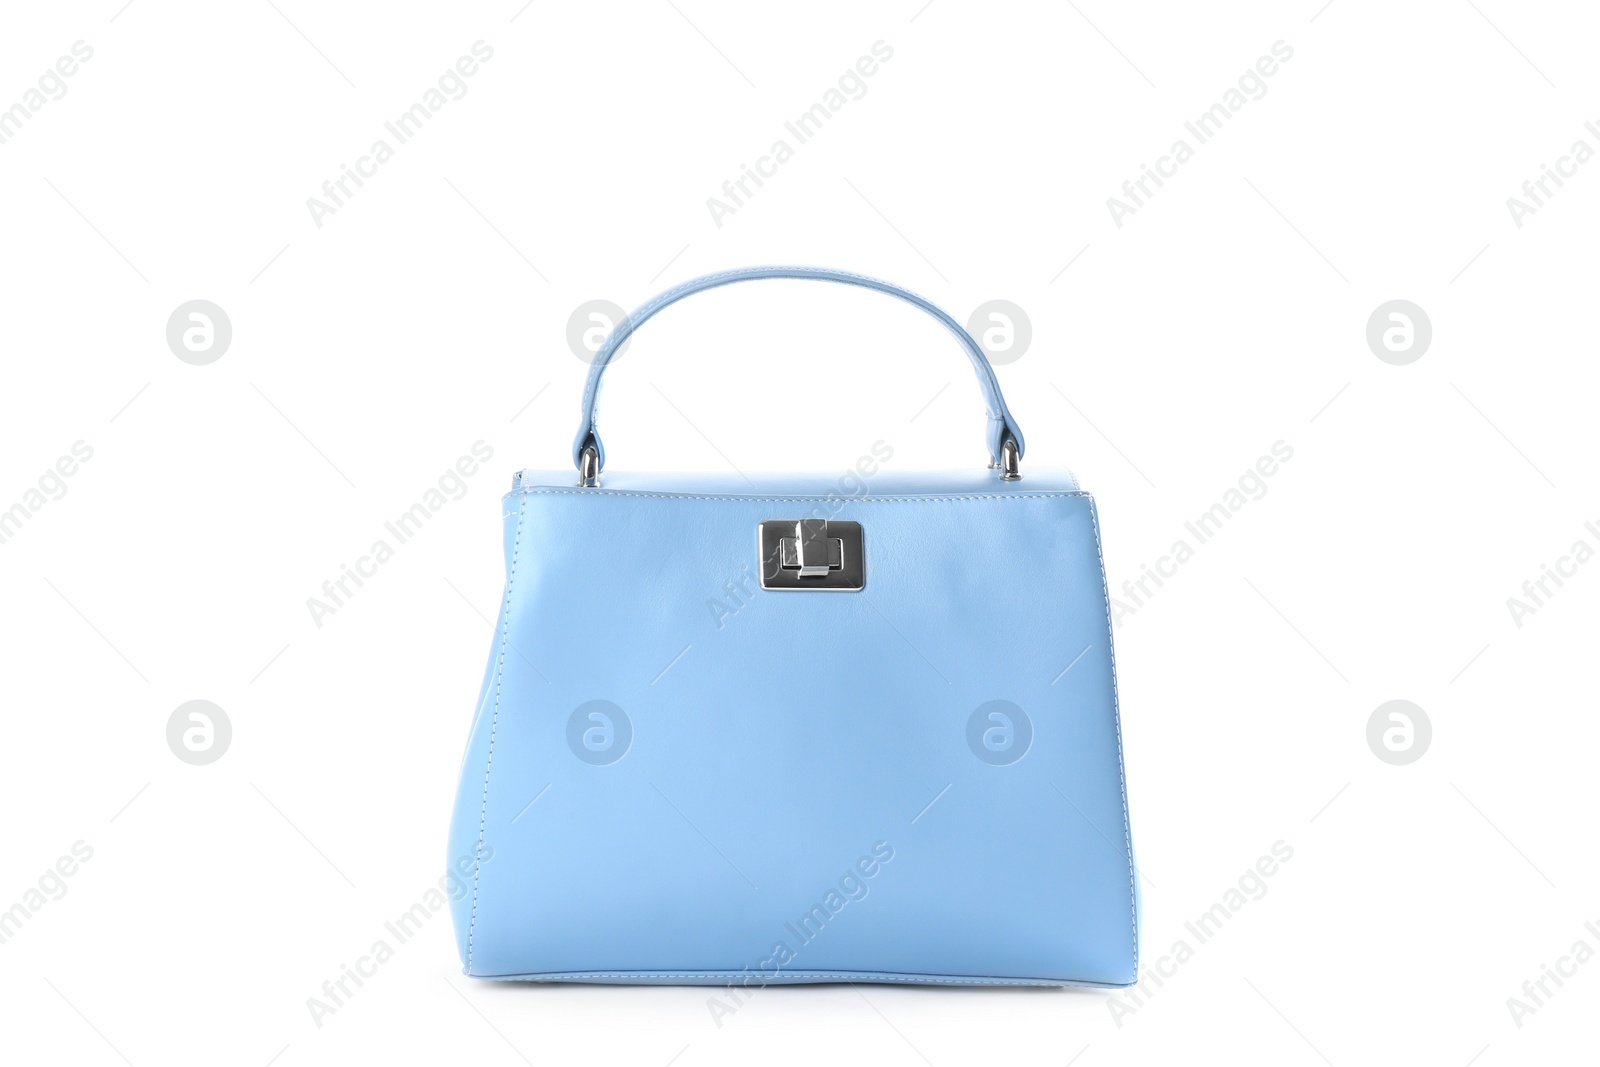 Photo of Stylish light blue leather bag isolated on white